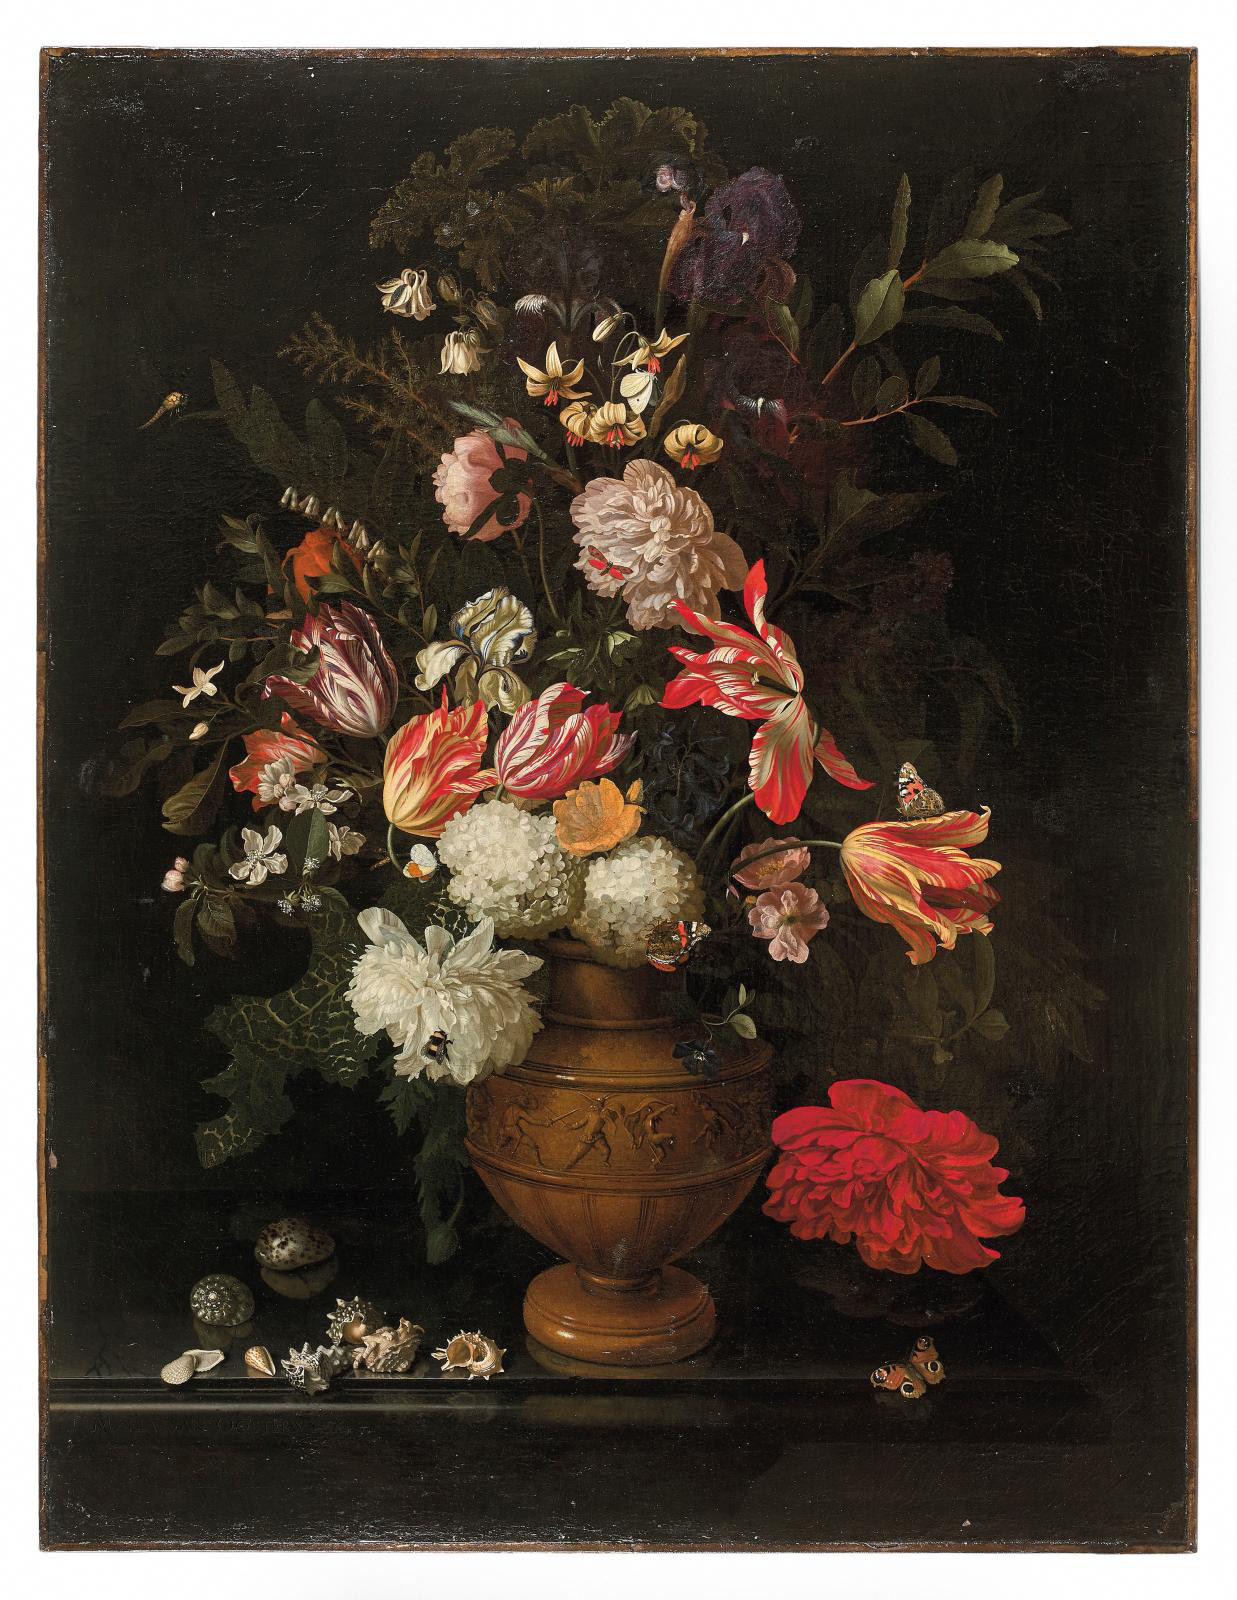 Maria Van Oosterwyck's Rare and Intriguing Vanitas Paintings